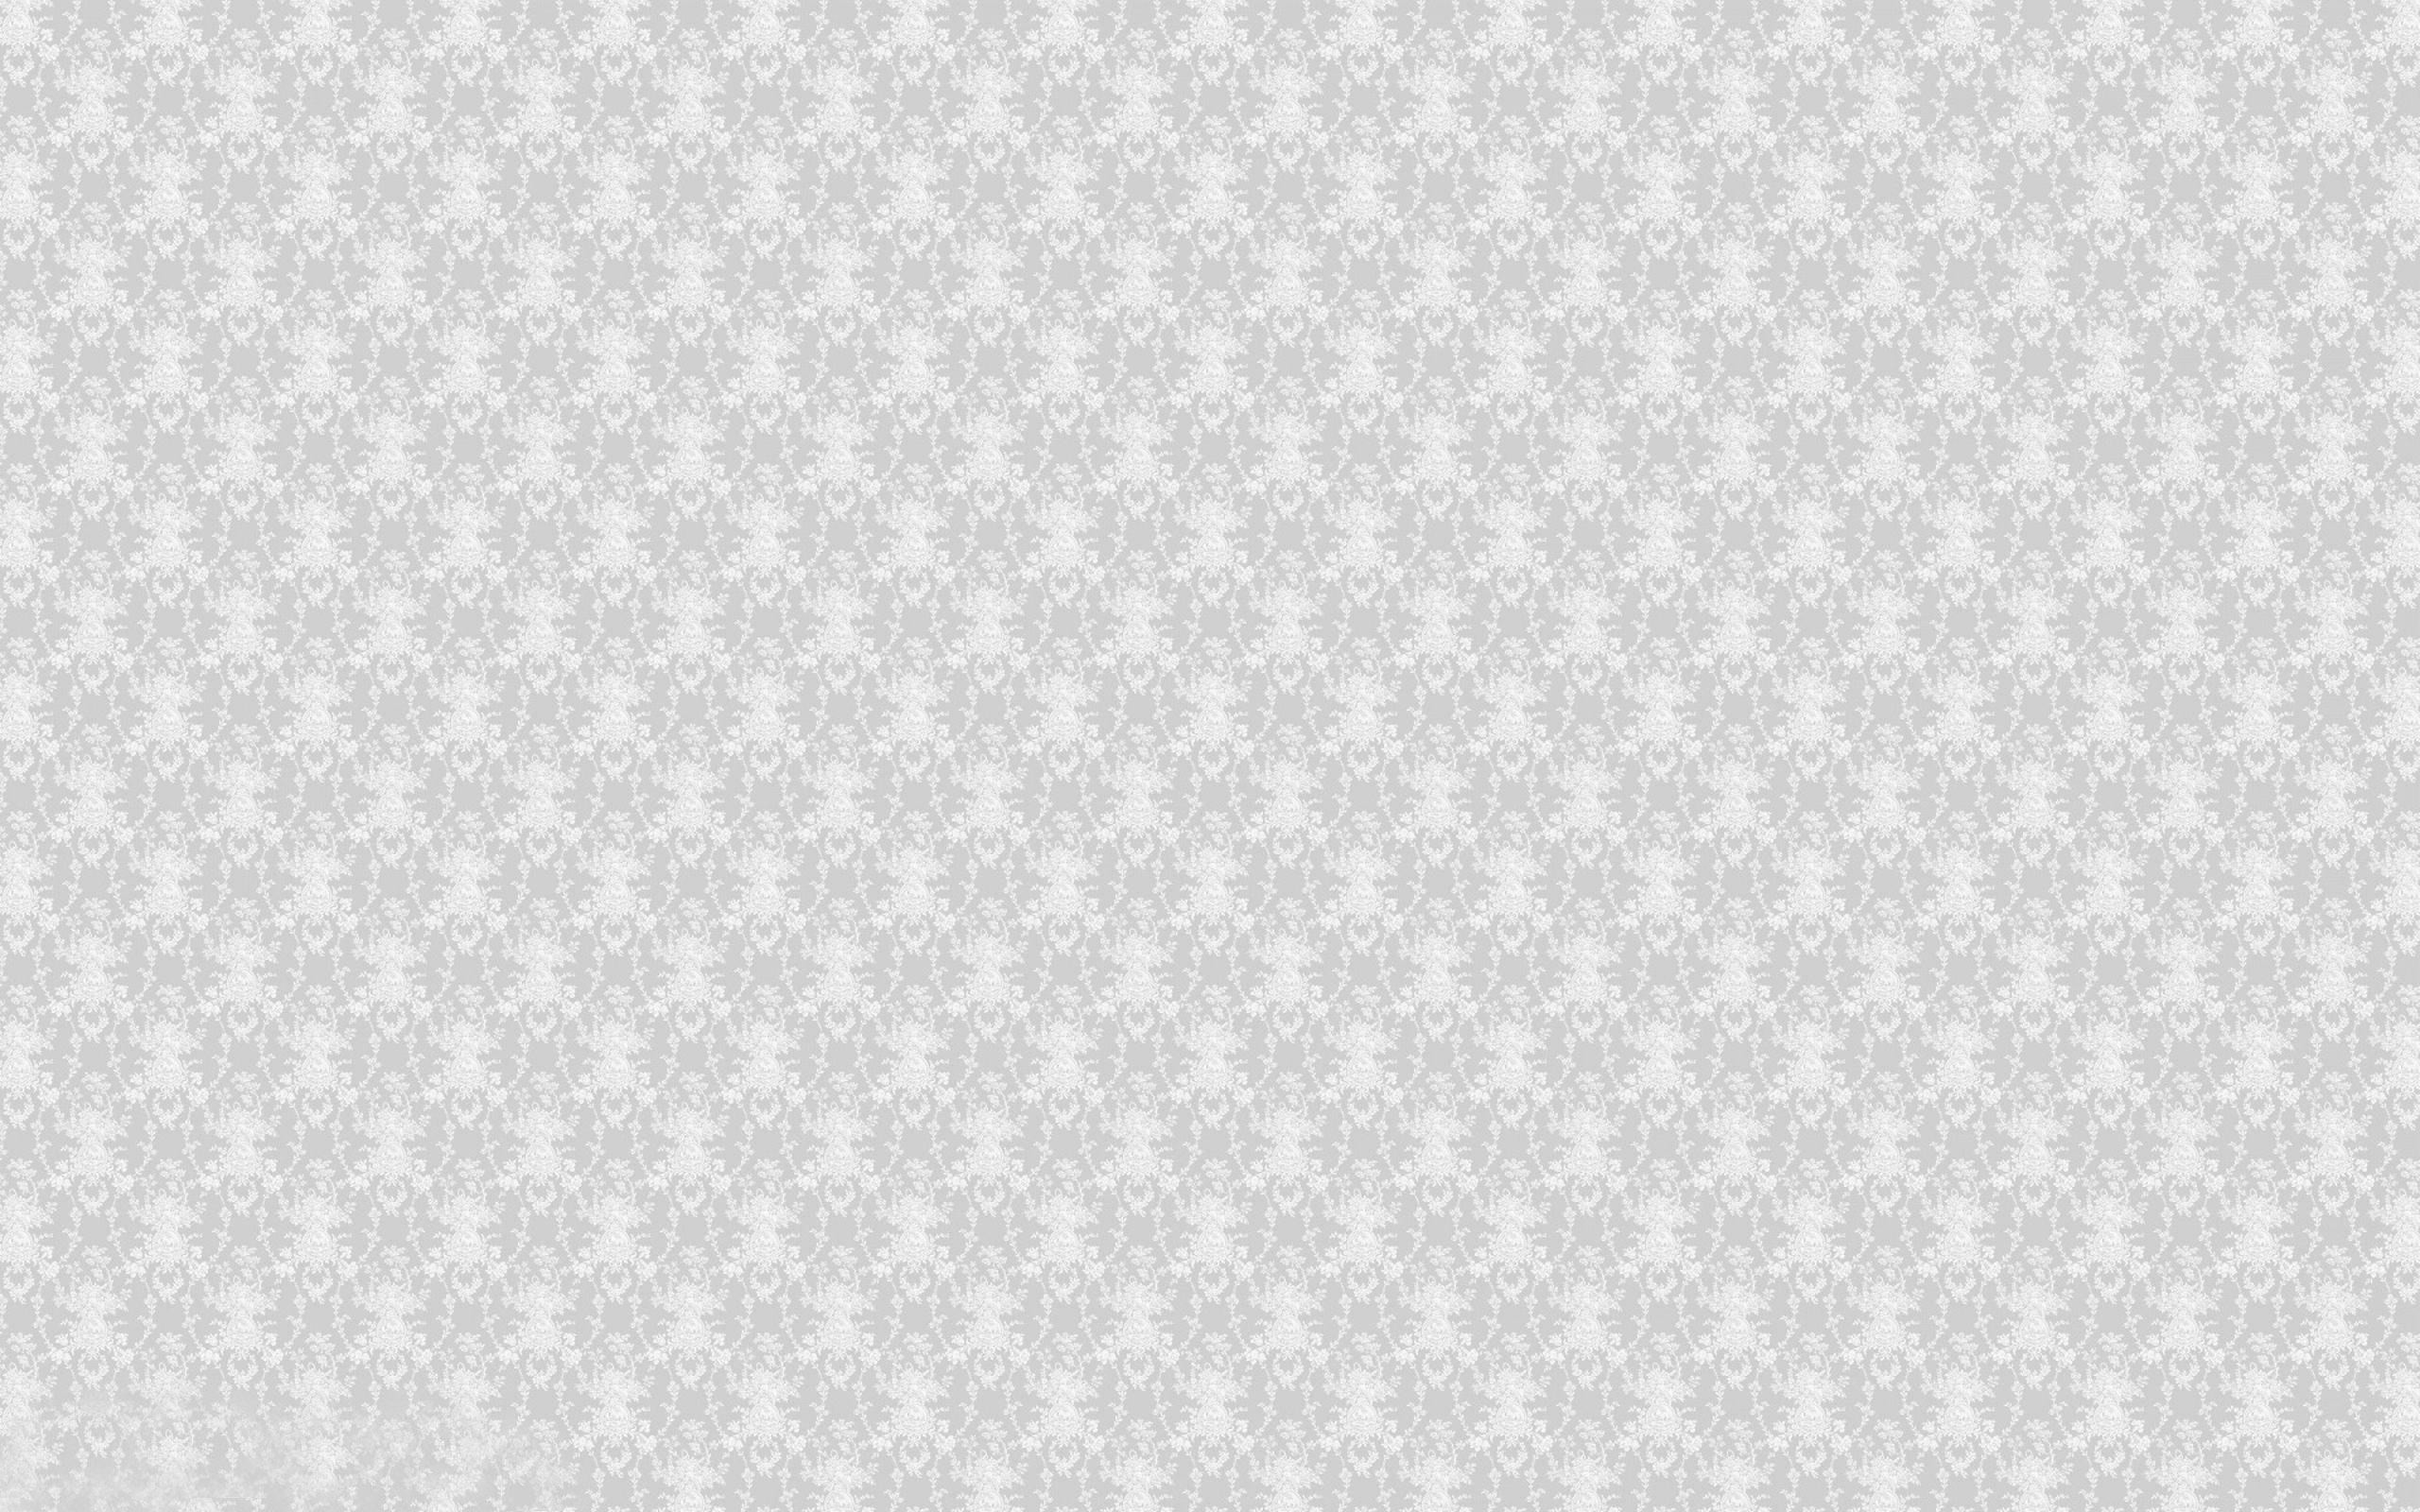 2560x1600 white lace hd wallpaper